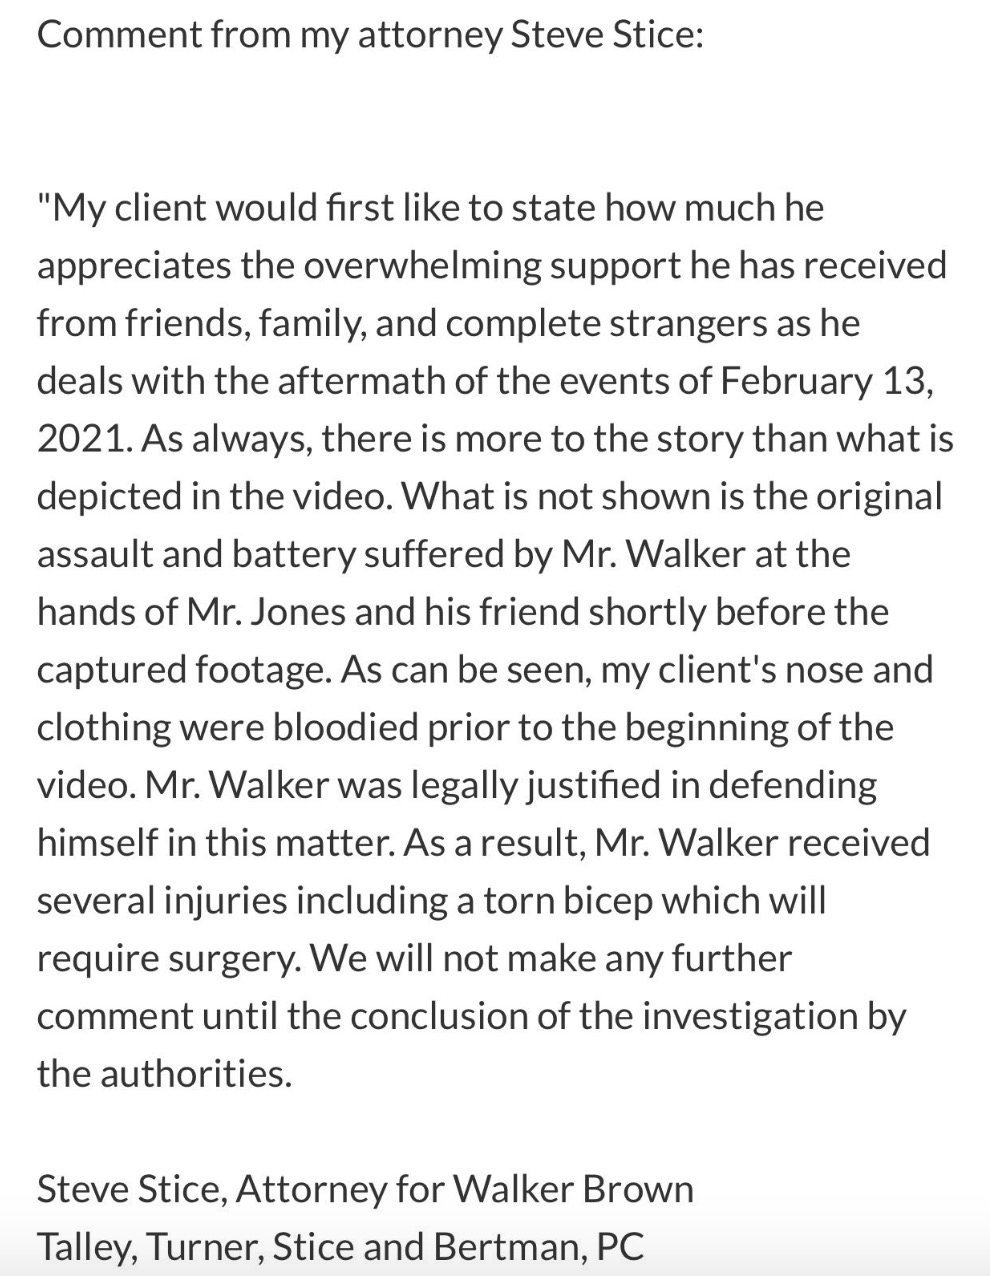 Walker Brown Attorney Statement (Credit: Attorney for Walker Brown)